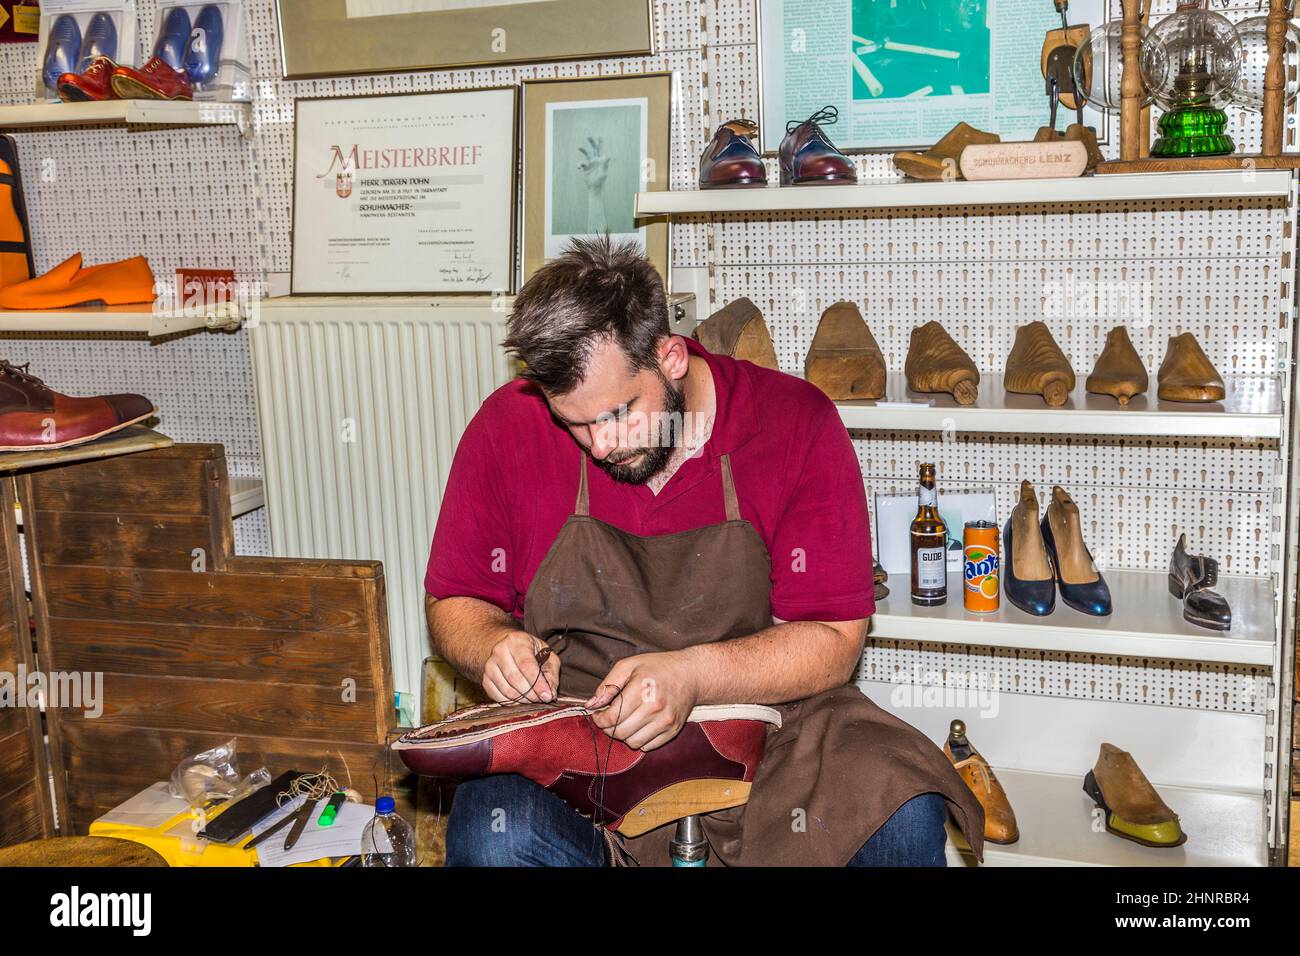 El zapatero abre su tienda en la fiesta anual de Bahnhofsviertel para mostrar su artesanía Foto de stock